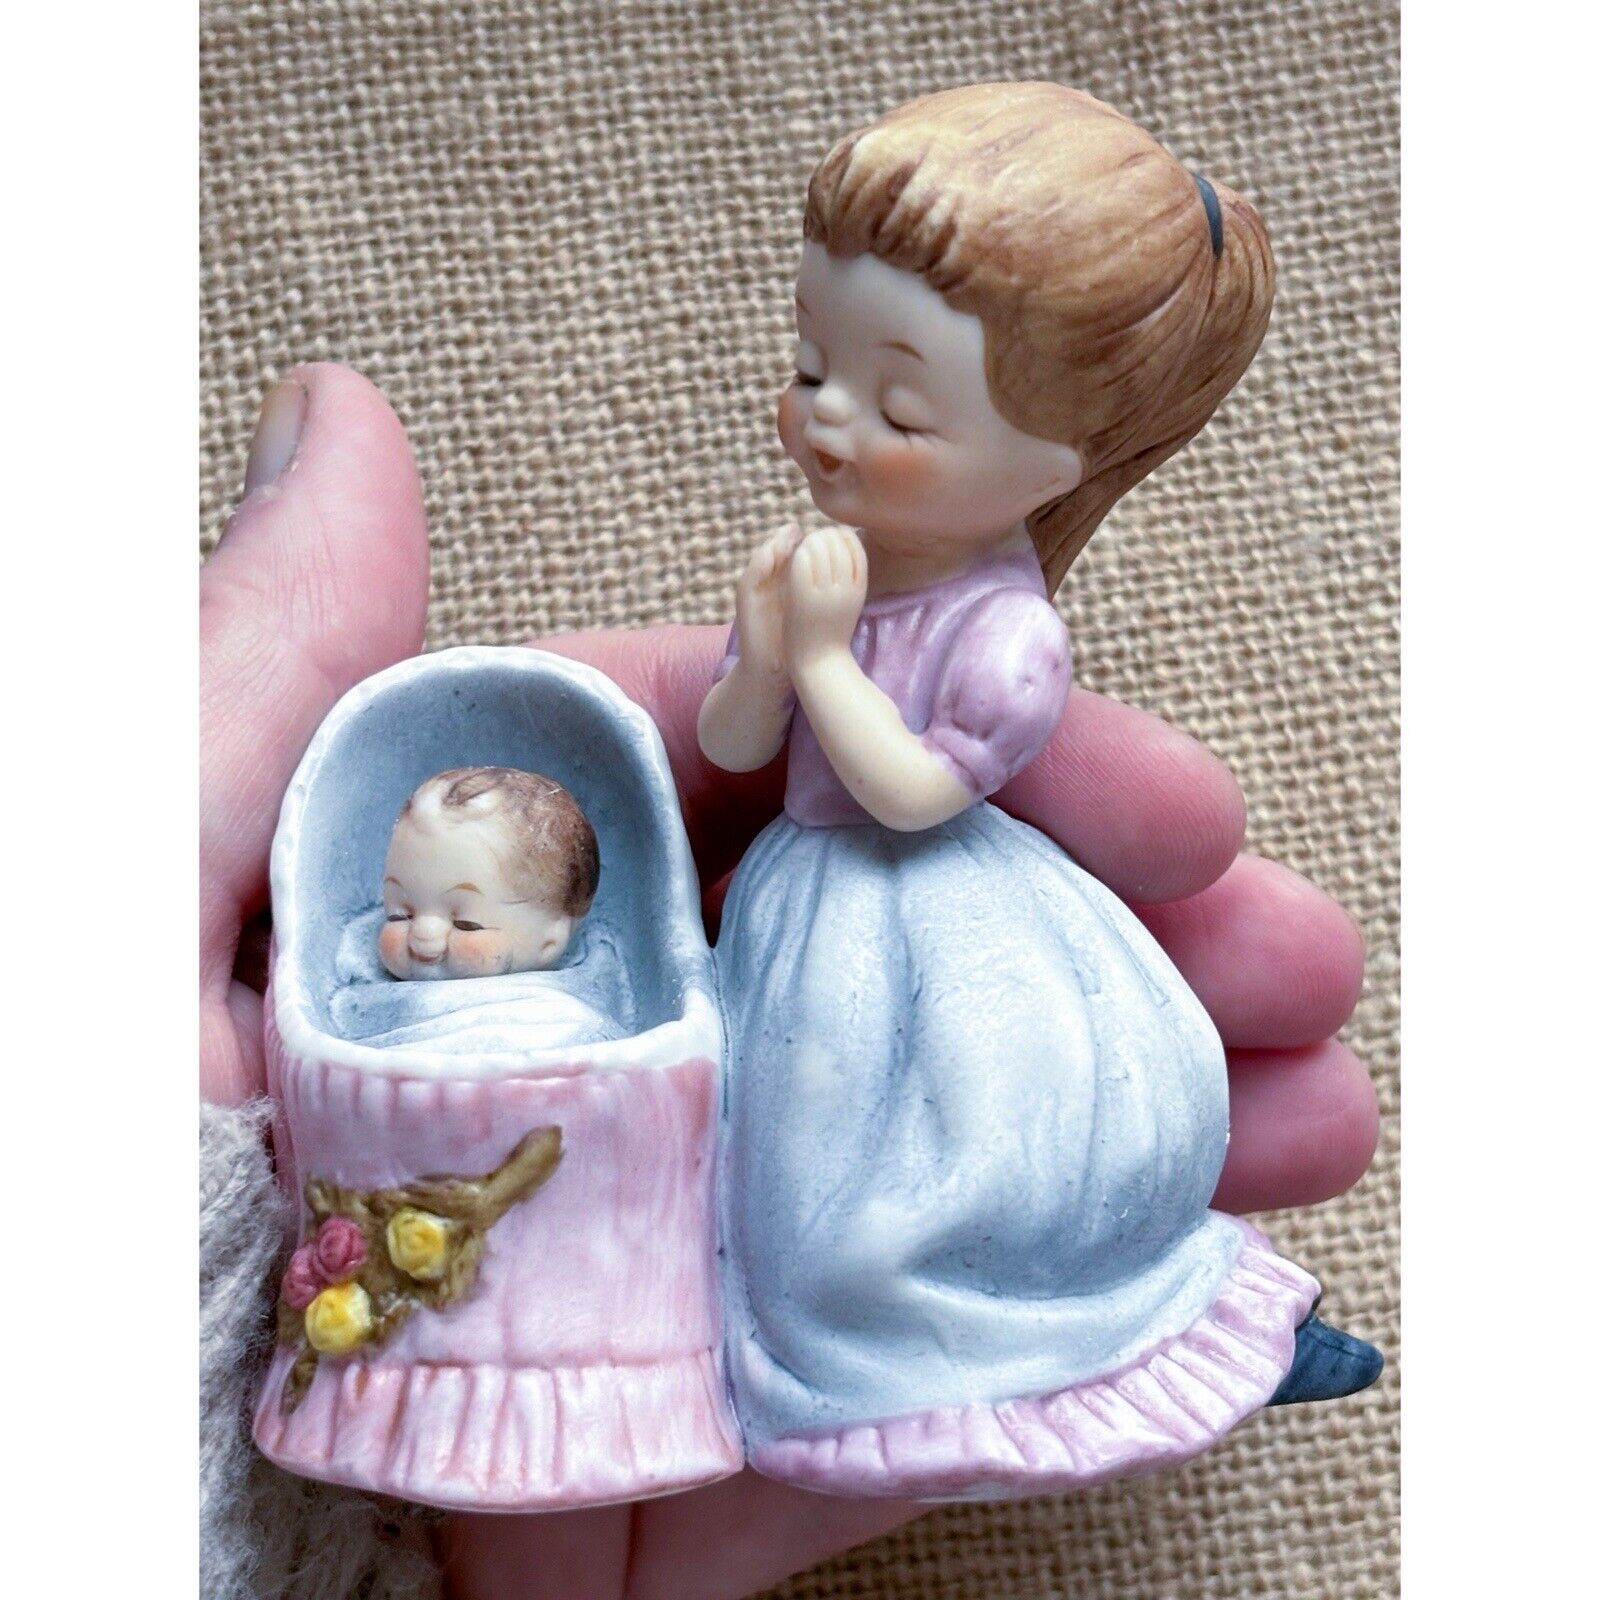 Vintage George Good Josef Original Praying Girl Baby Bassinet Porcelain Figurine